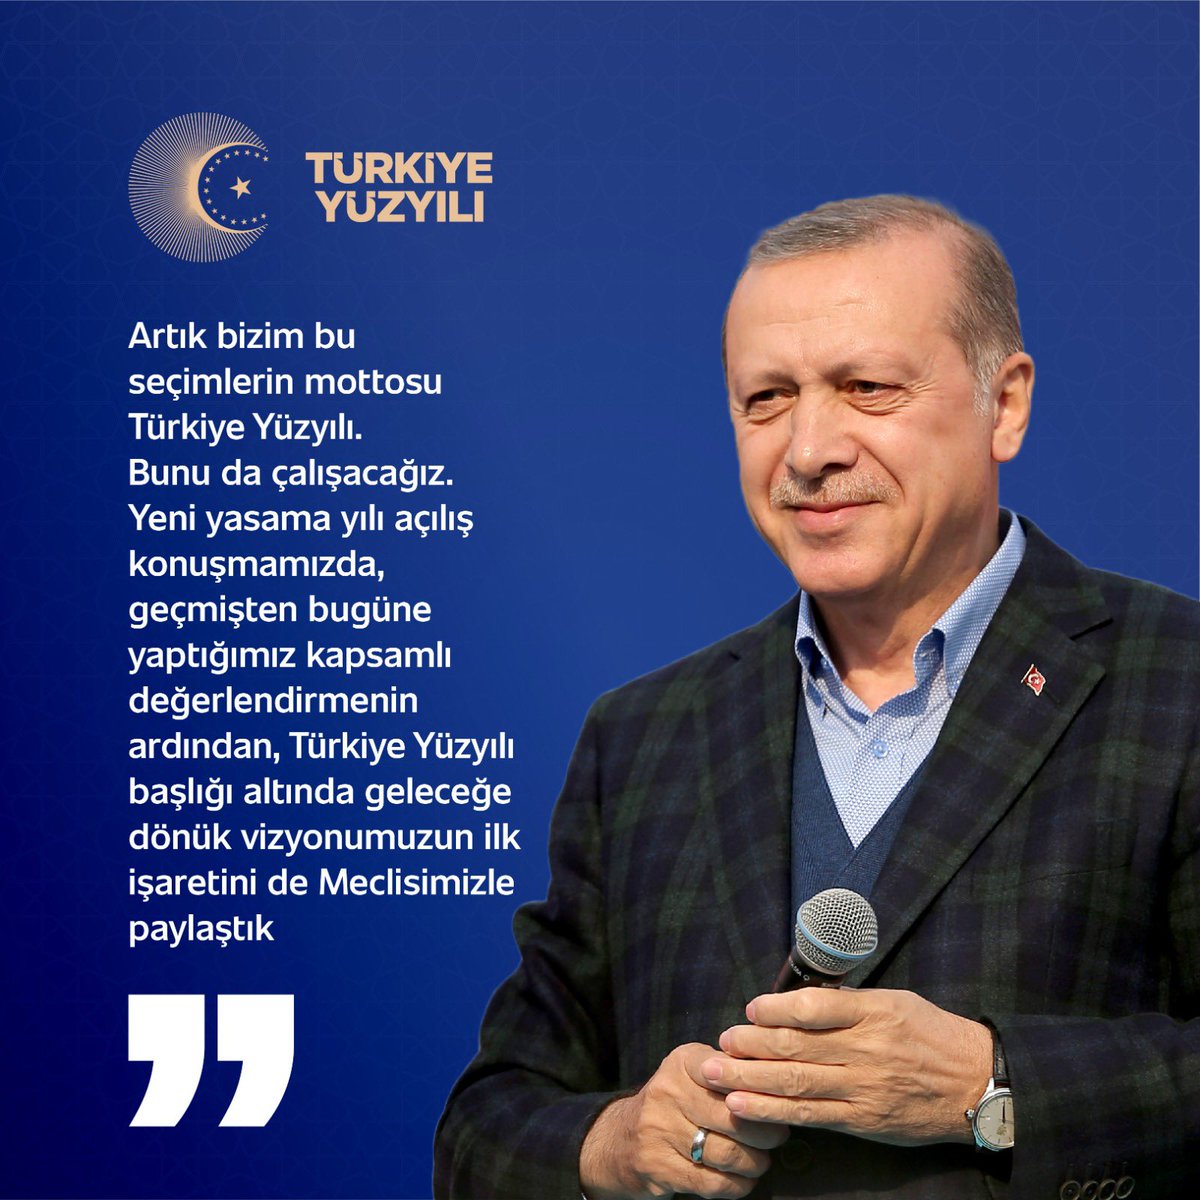 Cumhurbaşkanı @RTErdogan: 'Bu seçimlerin mottosu Türkiye Yüzyılı. Yeni yasama yılı açılış konuşmamızda geçmişten bugüne yaptığımız kapsamlı değerlendirmenin ardından Türkiye Yüzyılı başlığı altında geleceğe dönük vizyonumuzun ilk işaretini de Meclisimizle paylaştık.'